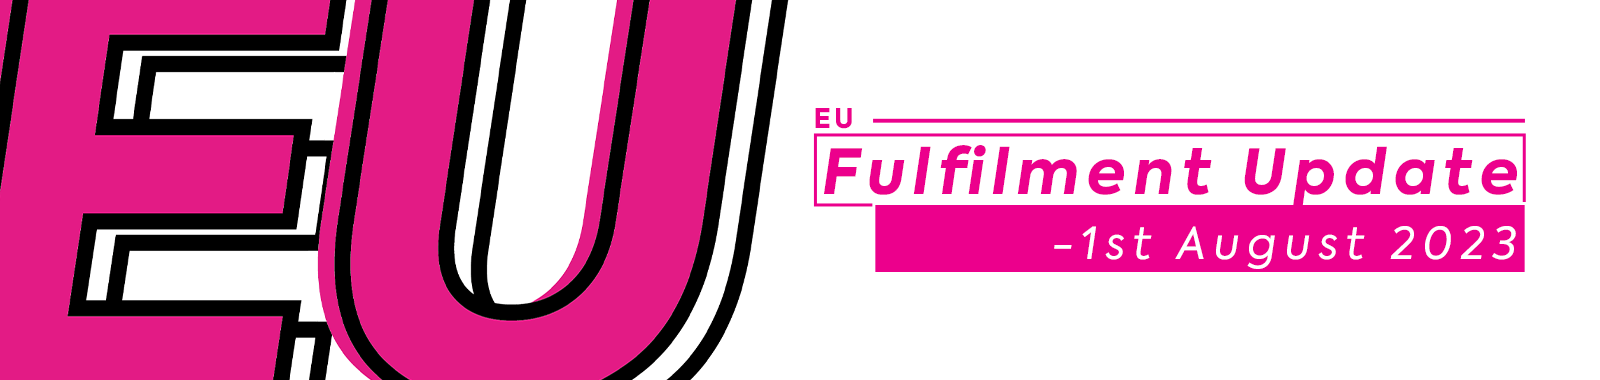 EU Fulfilment Update - 1st August